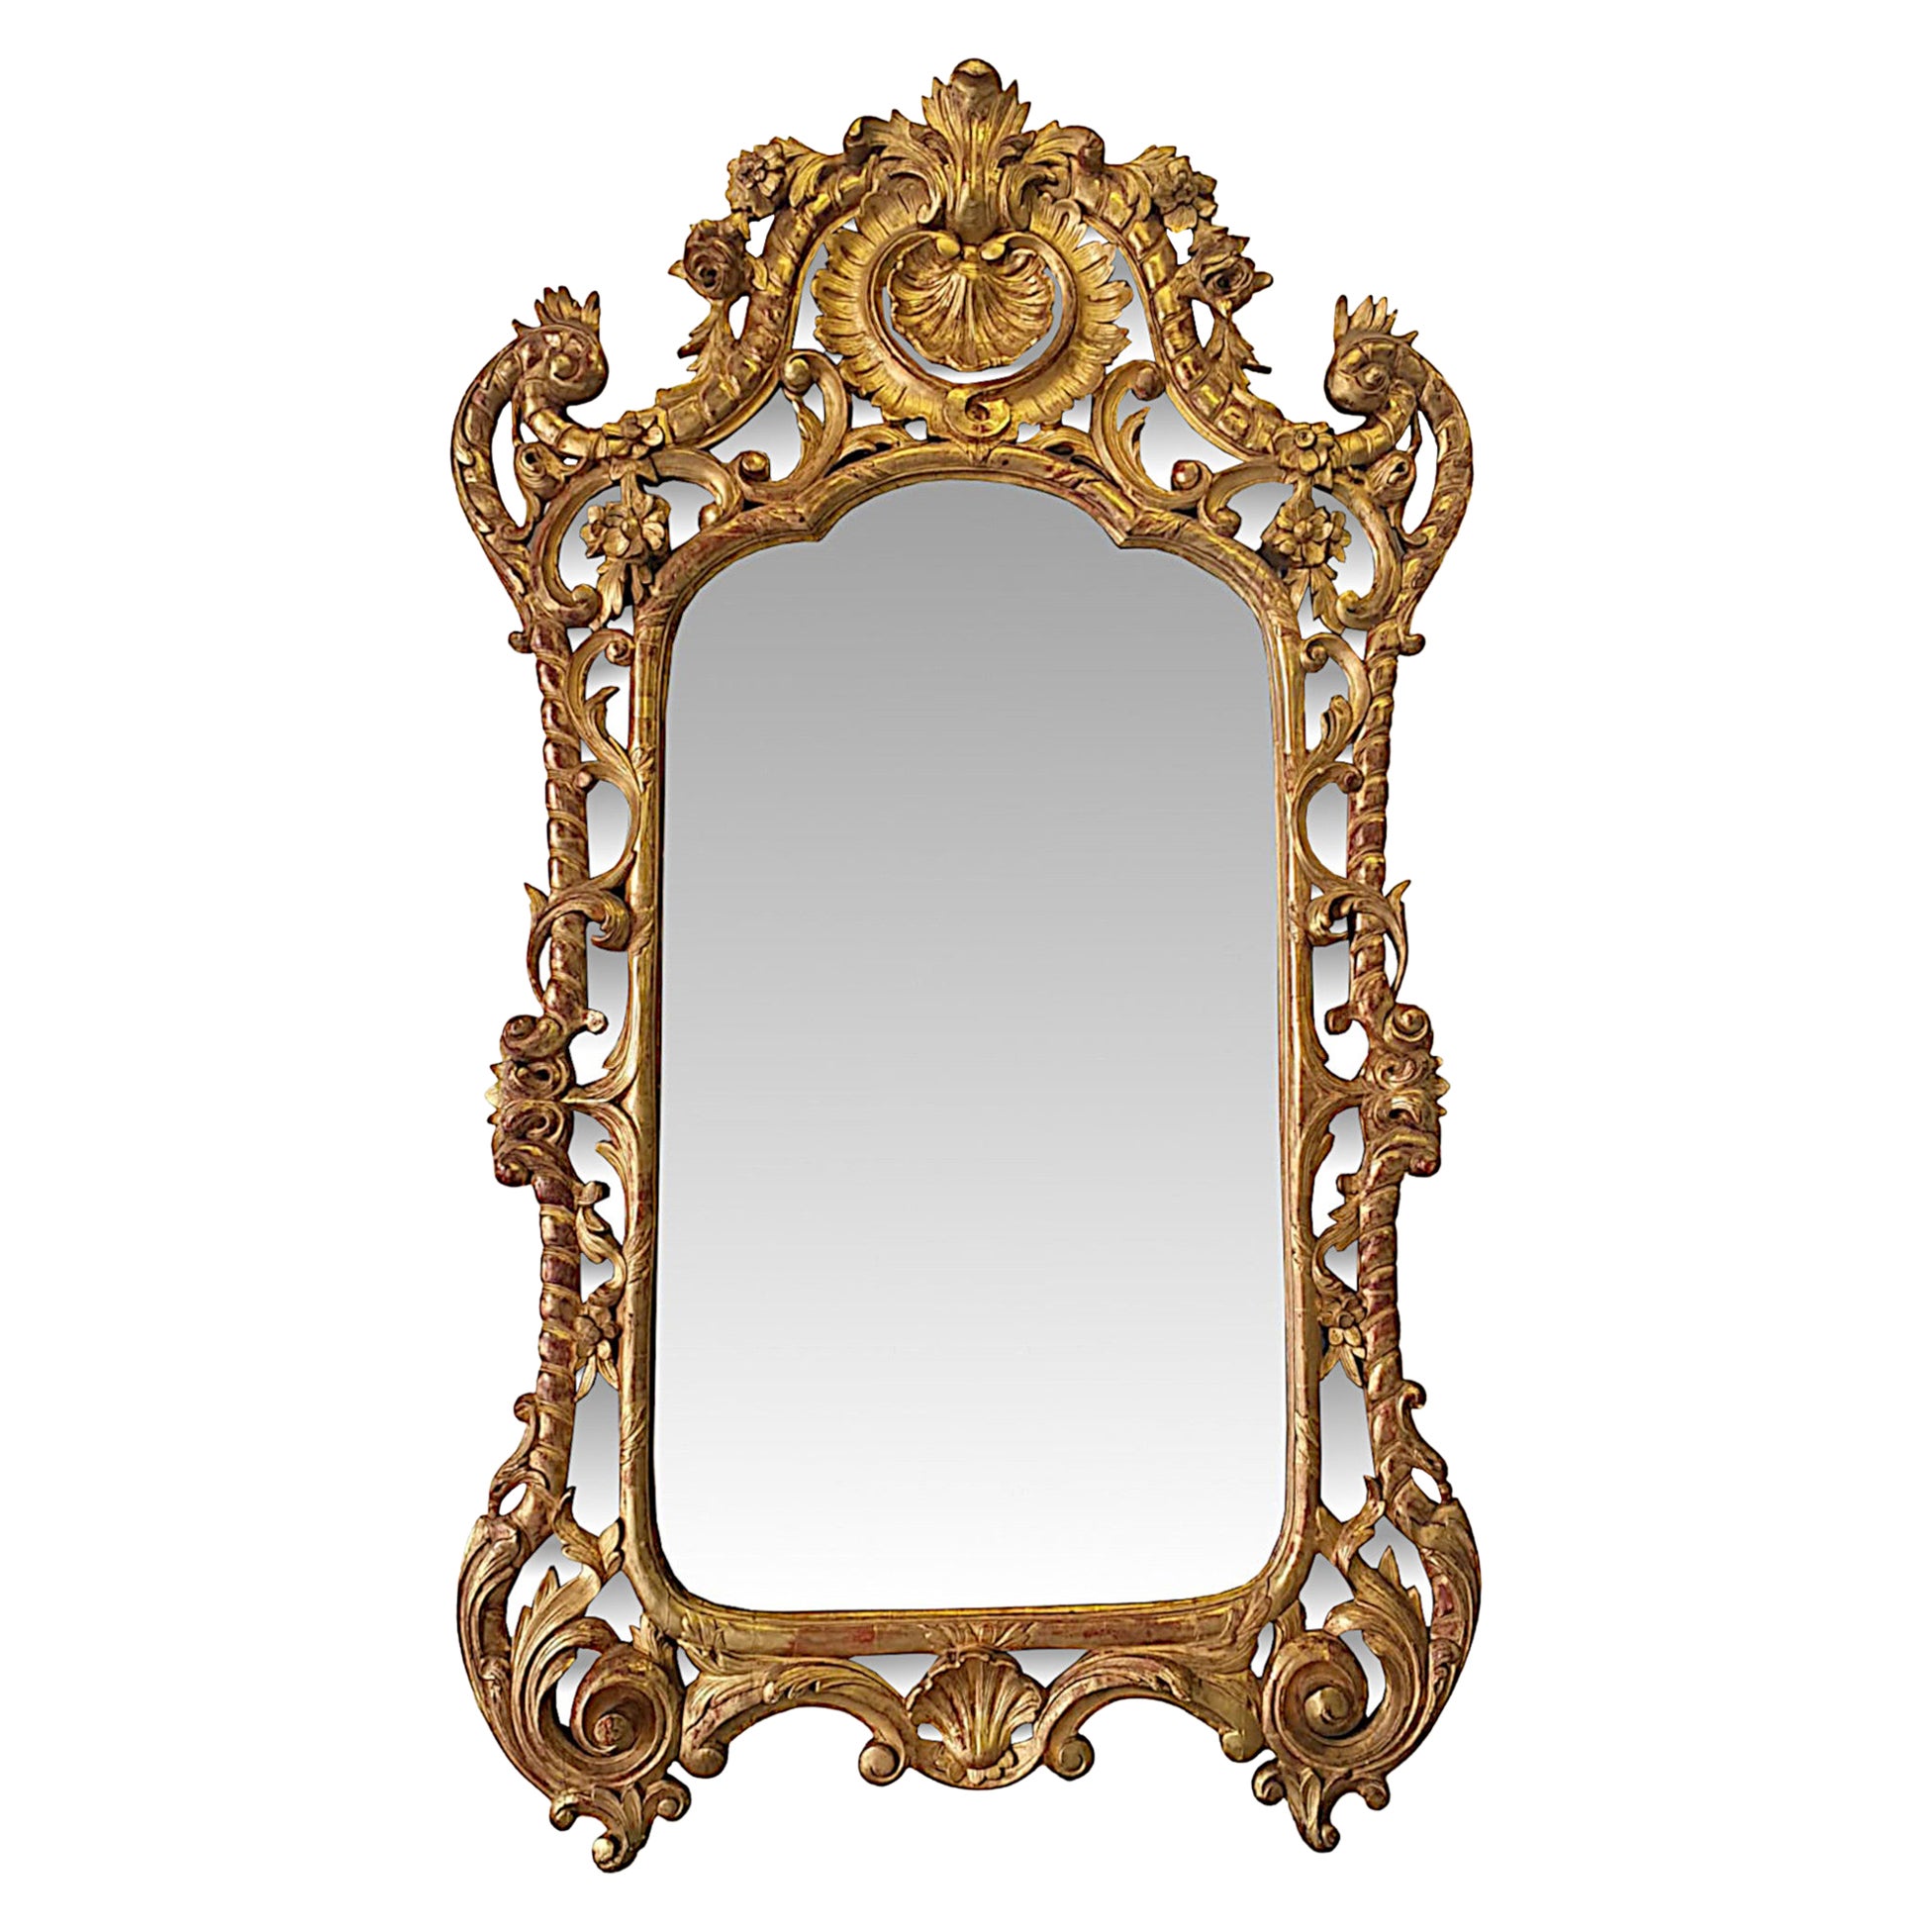 Grand miroir surmonté d'un grand miroir en bois doré du début du 19ème siècle, rare et exceptionnel